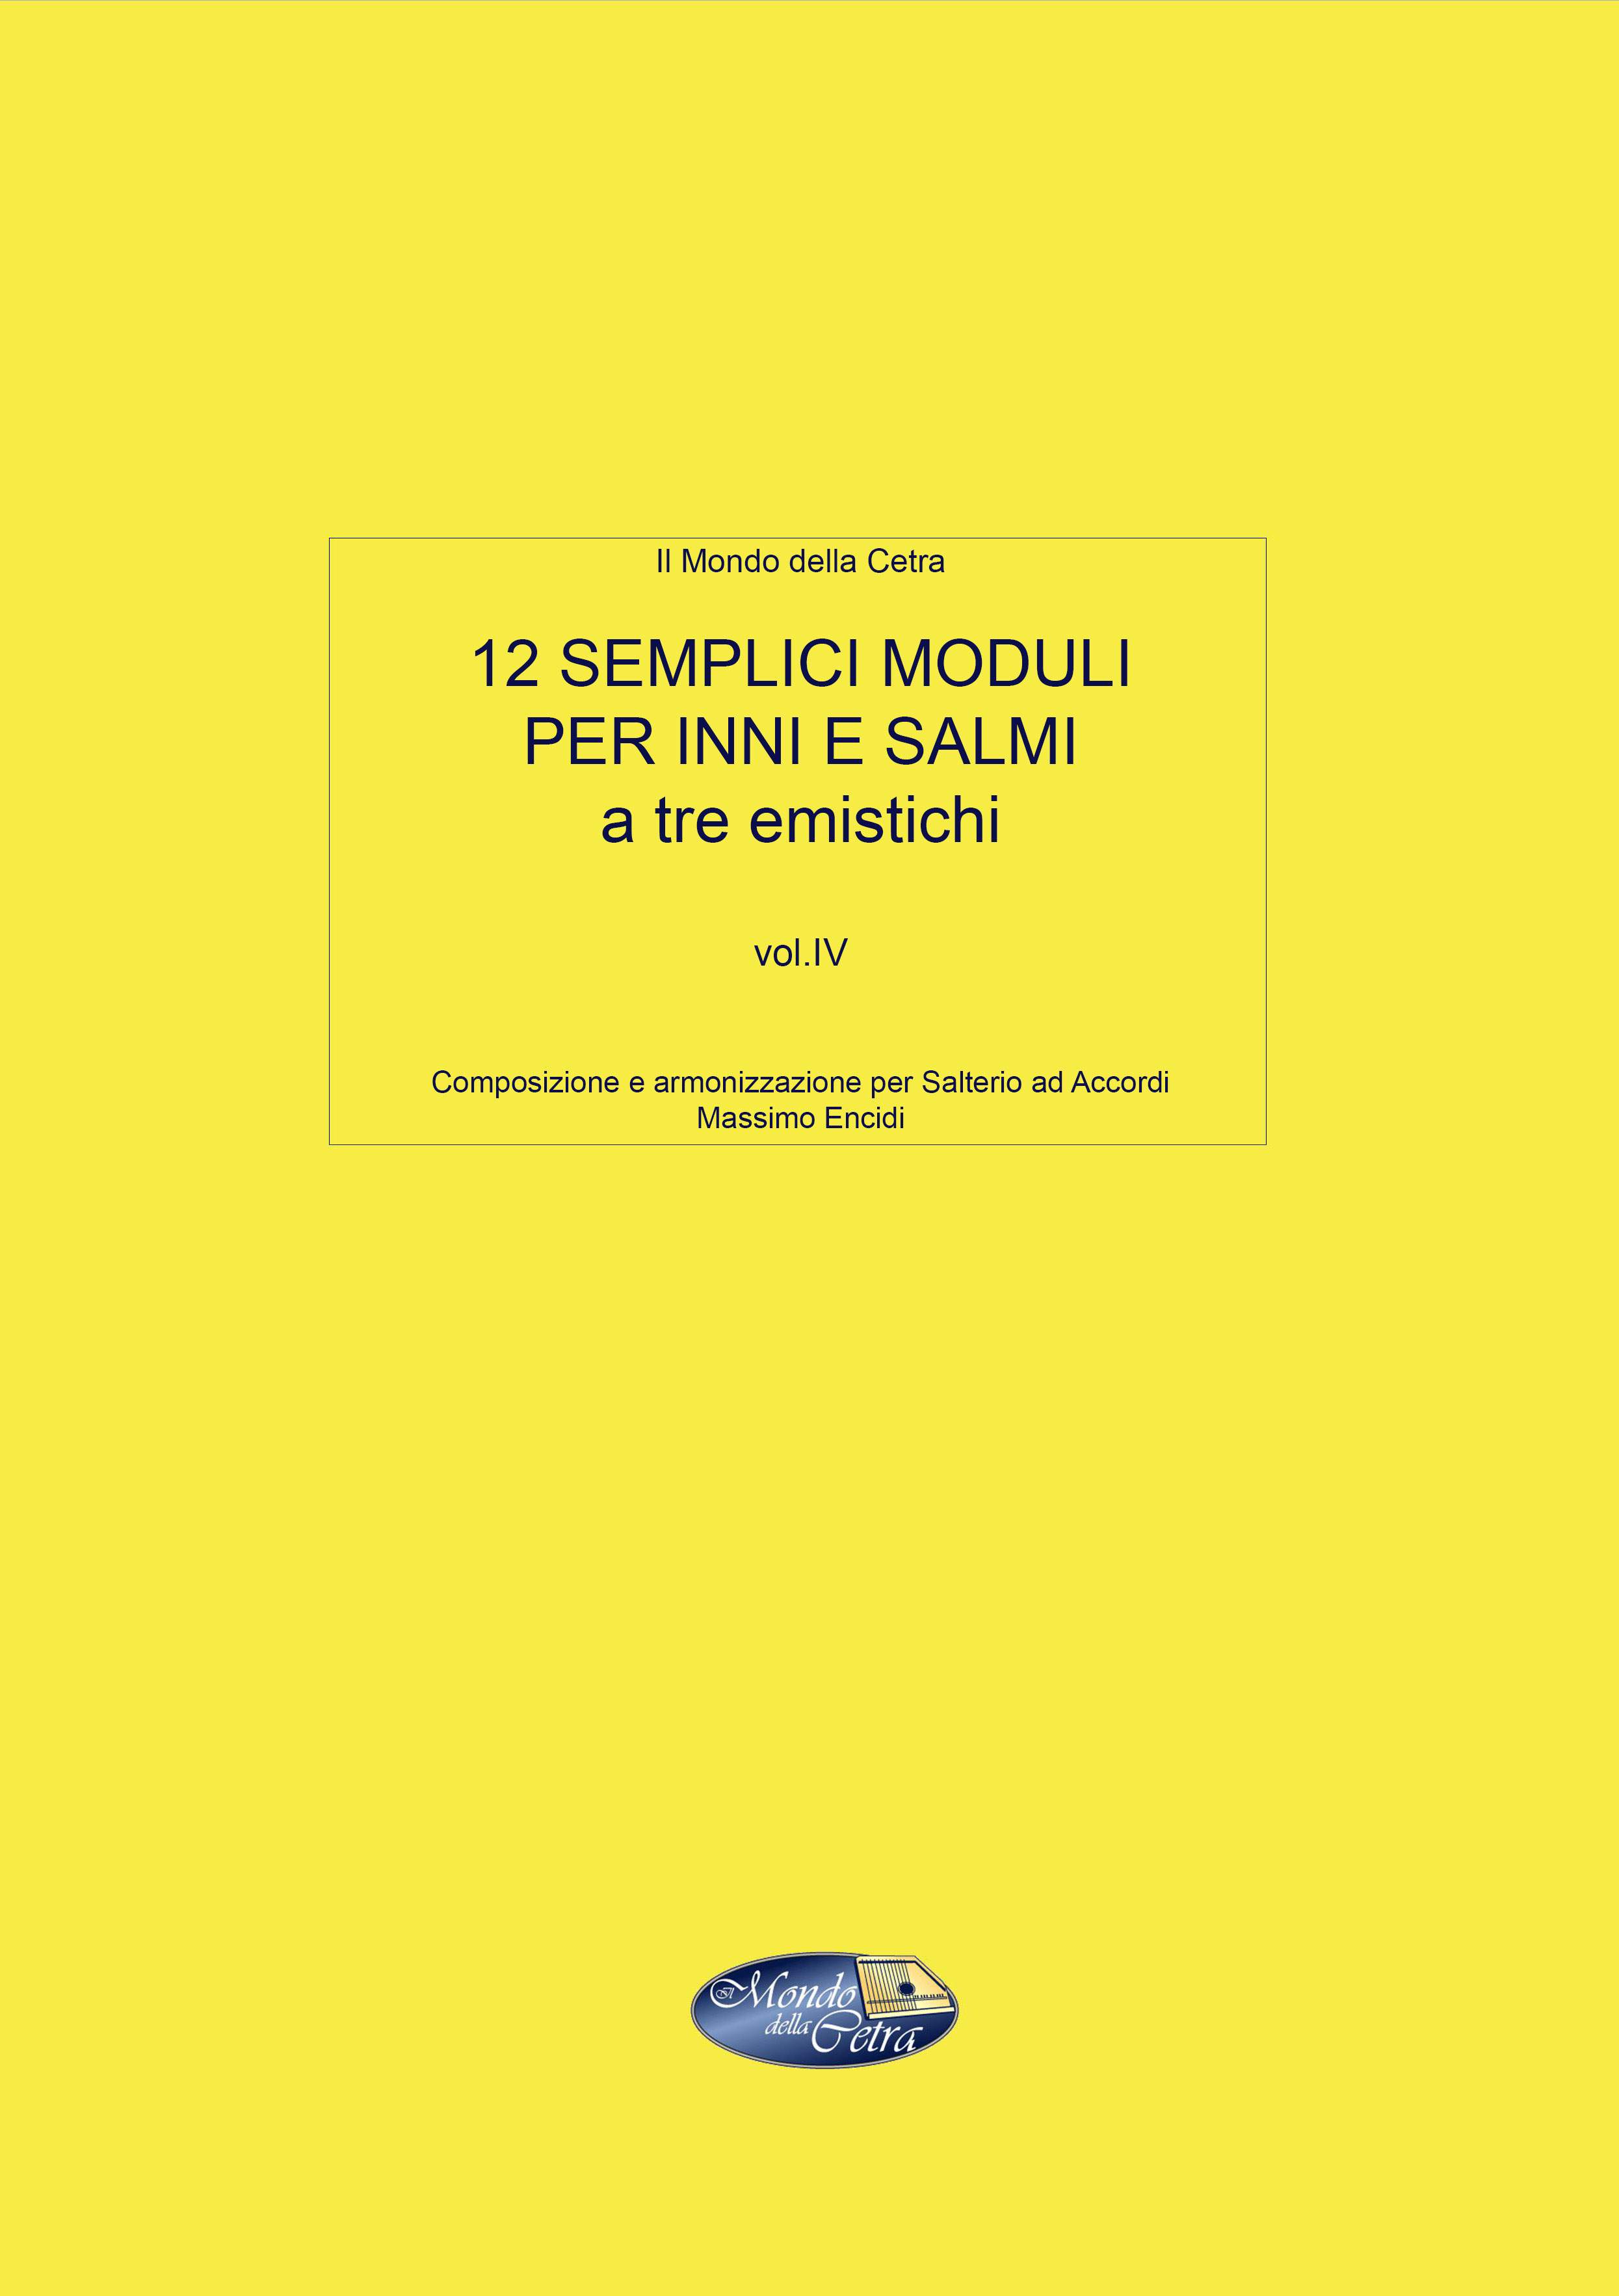 12 SEMPLICI MODULI PER CANTARE INNI E SALMI A TRE EMISTICHI - Vol. 4